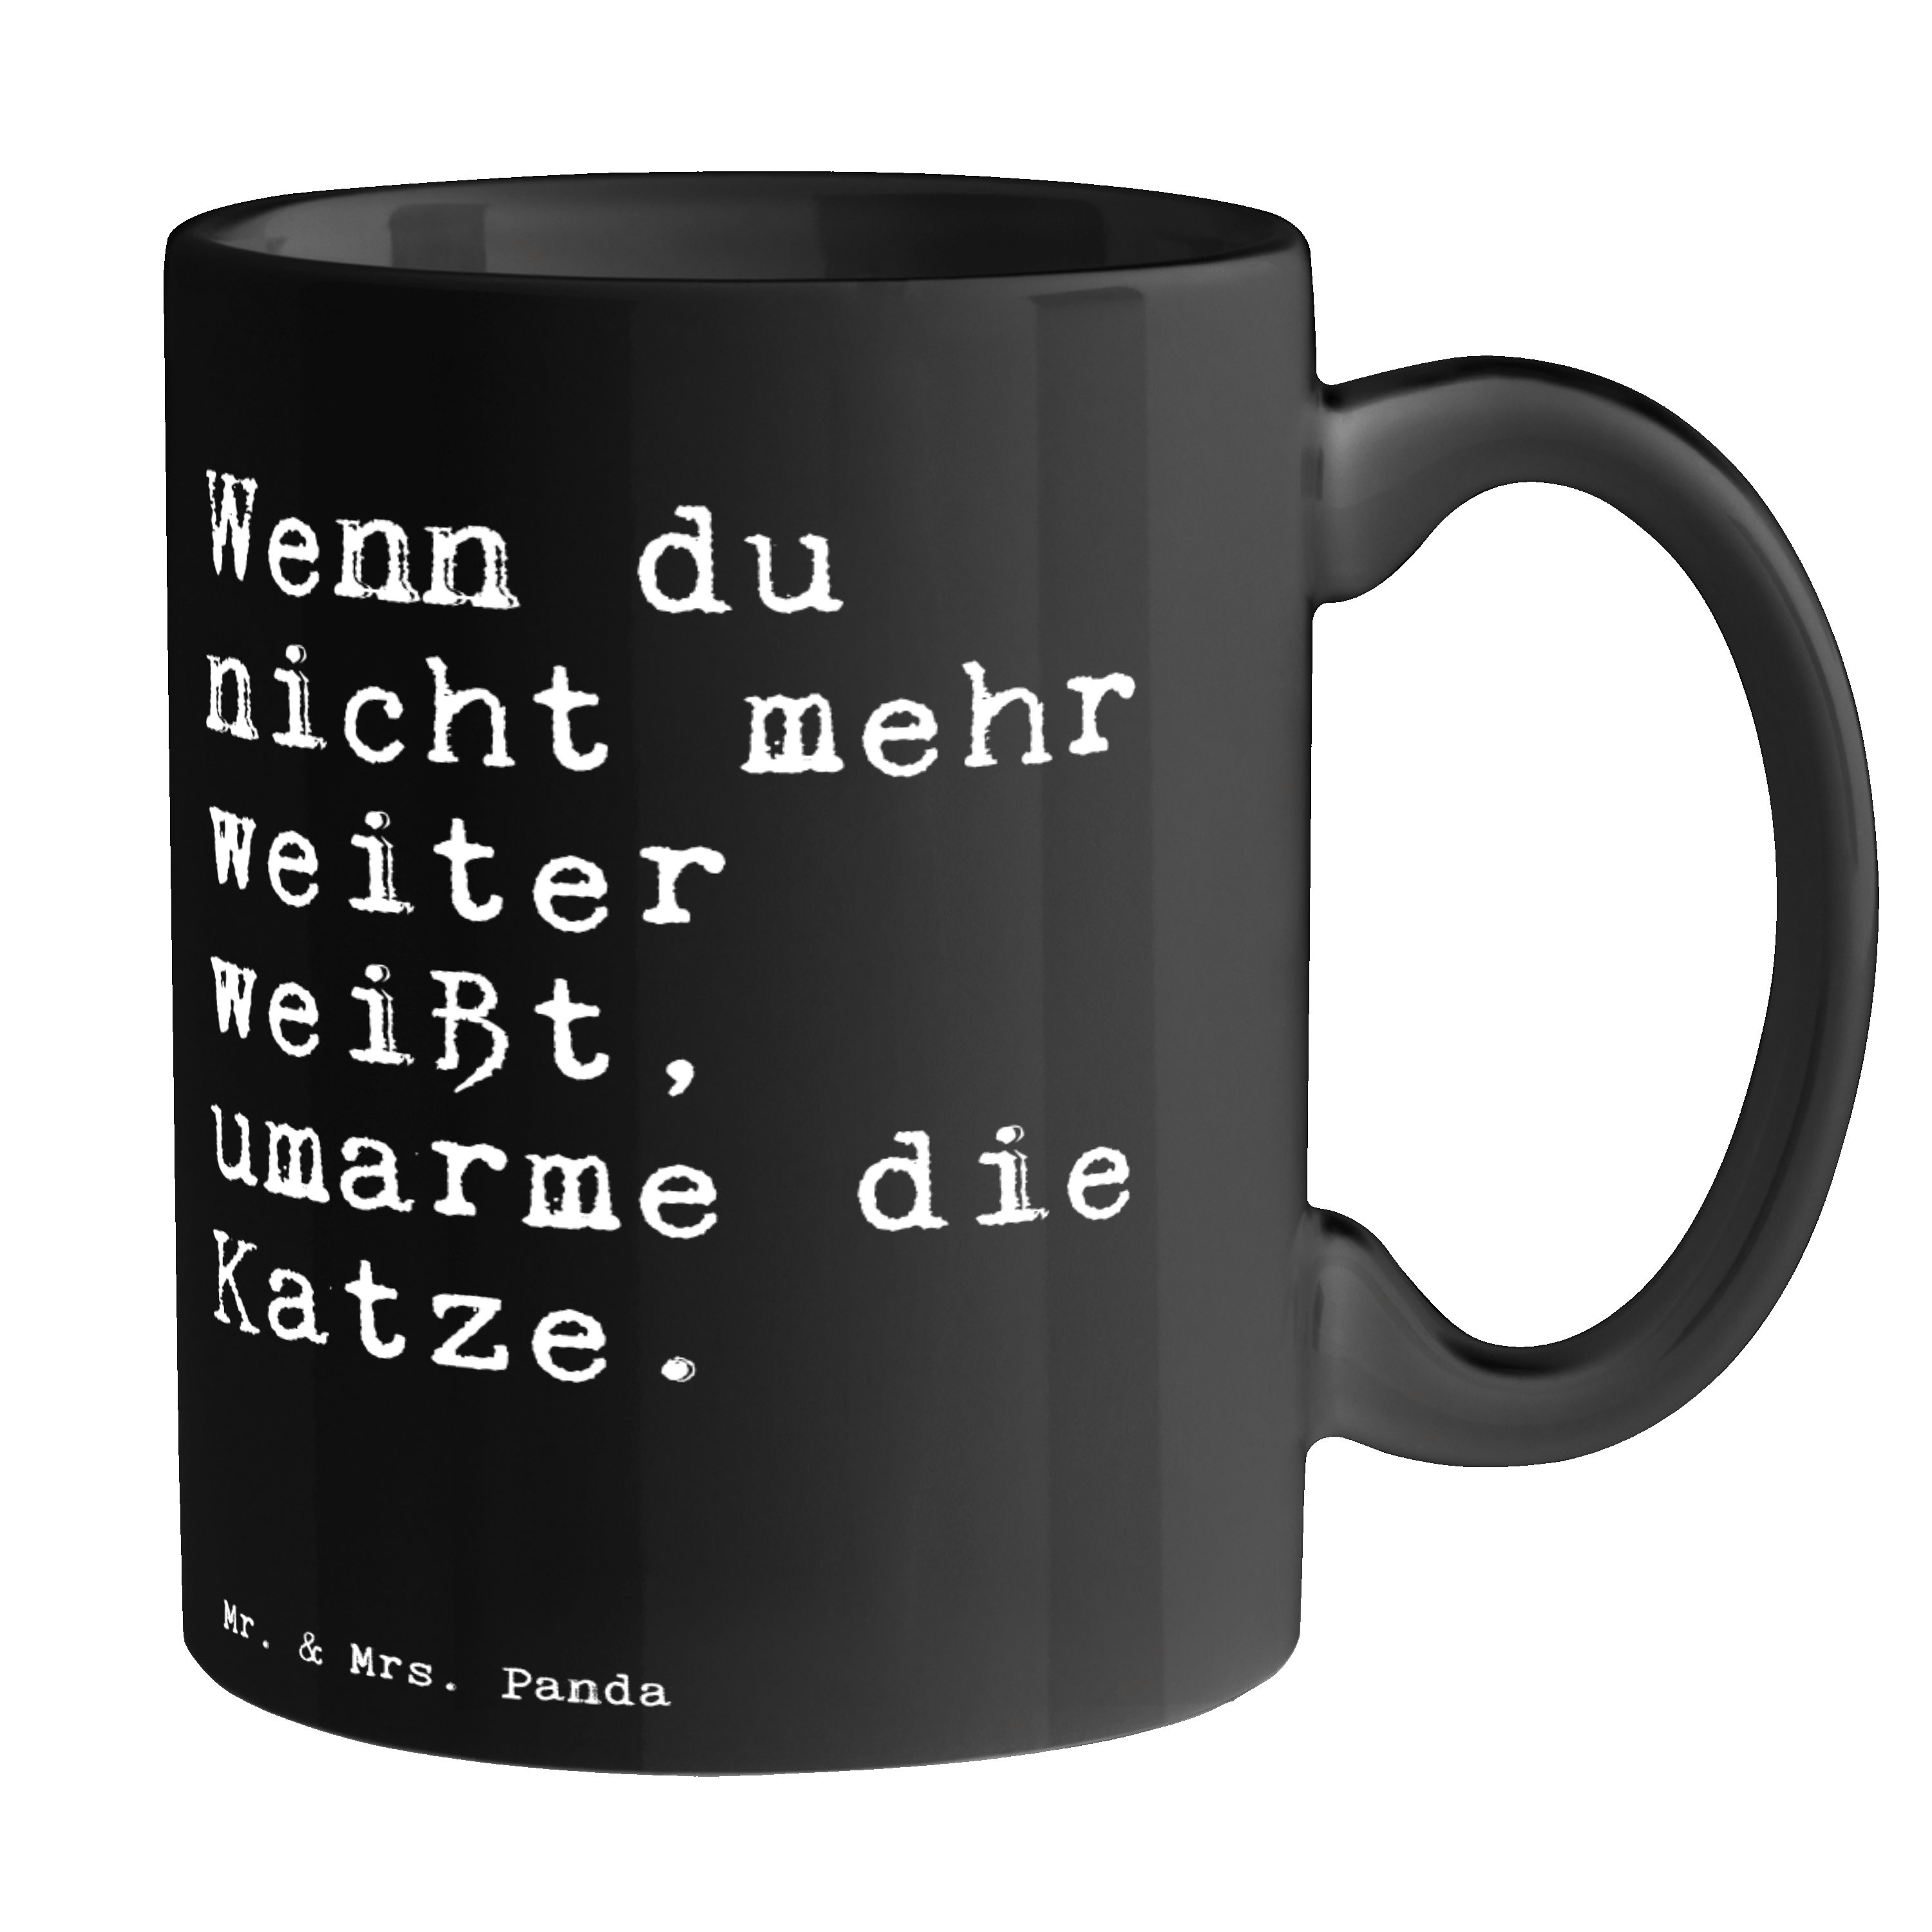 Wenn Tasse - mehr... & du Keramik Kaffeeb, Panda Mode, Mr. Schwarz nicht Schwarz Mrs. - Weisheiten, Geschenk,